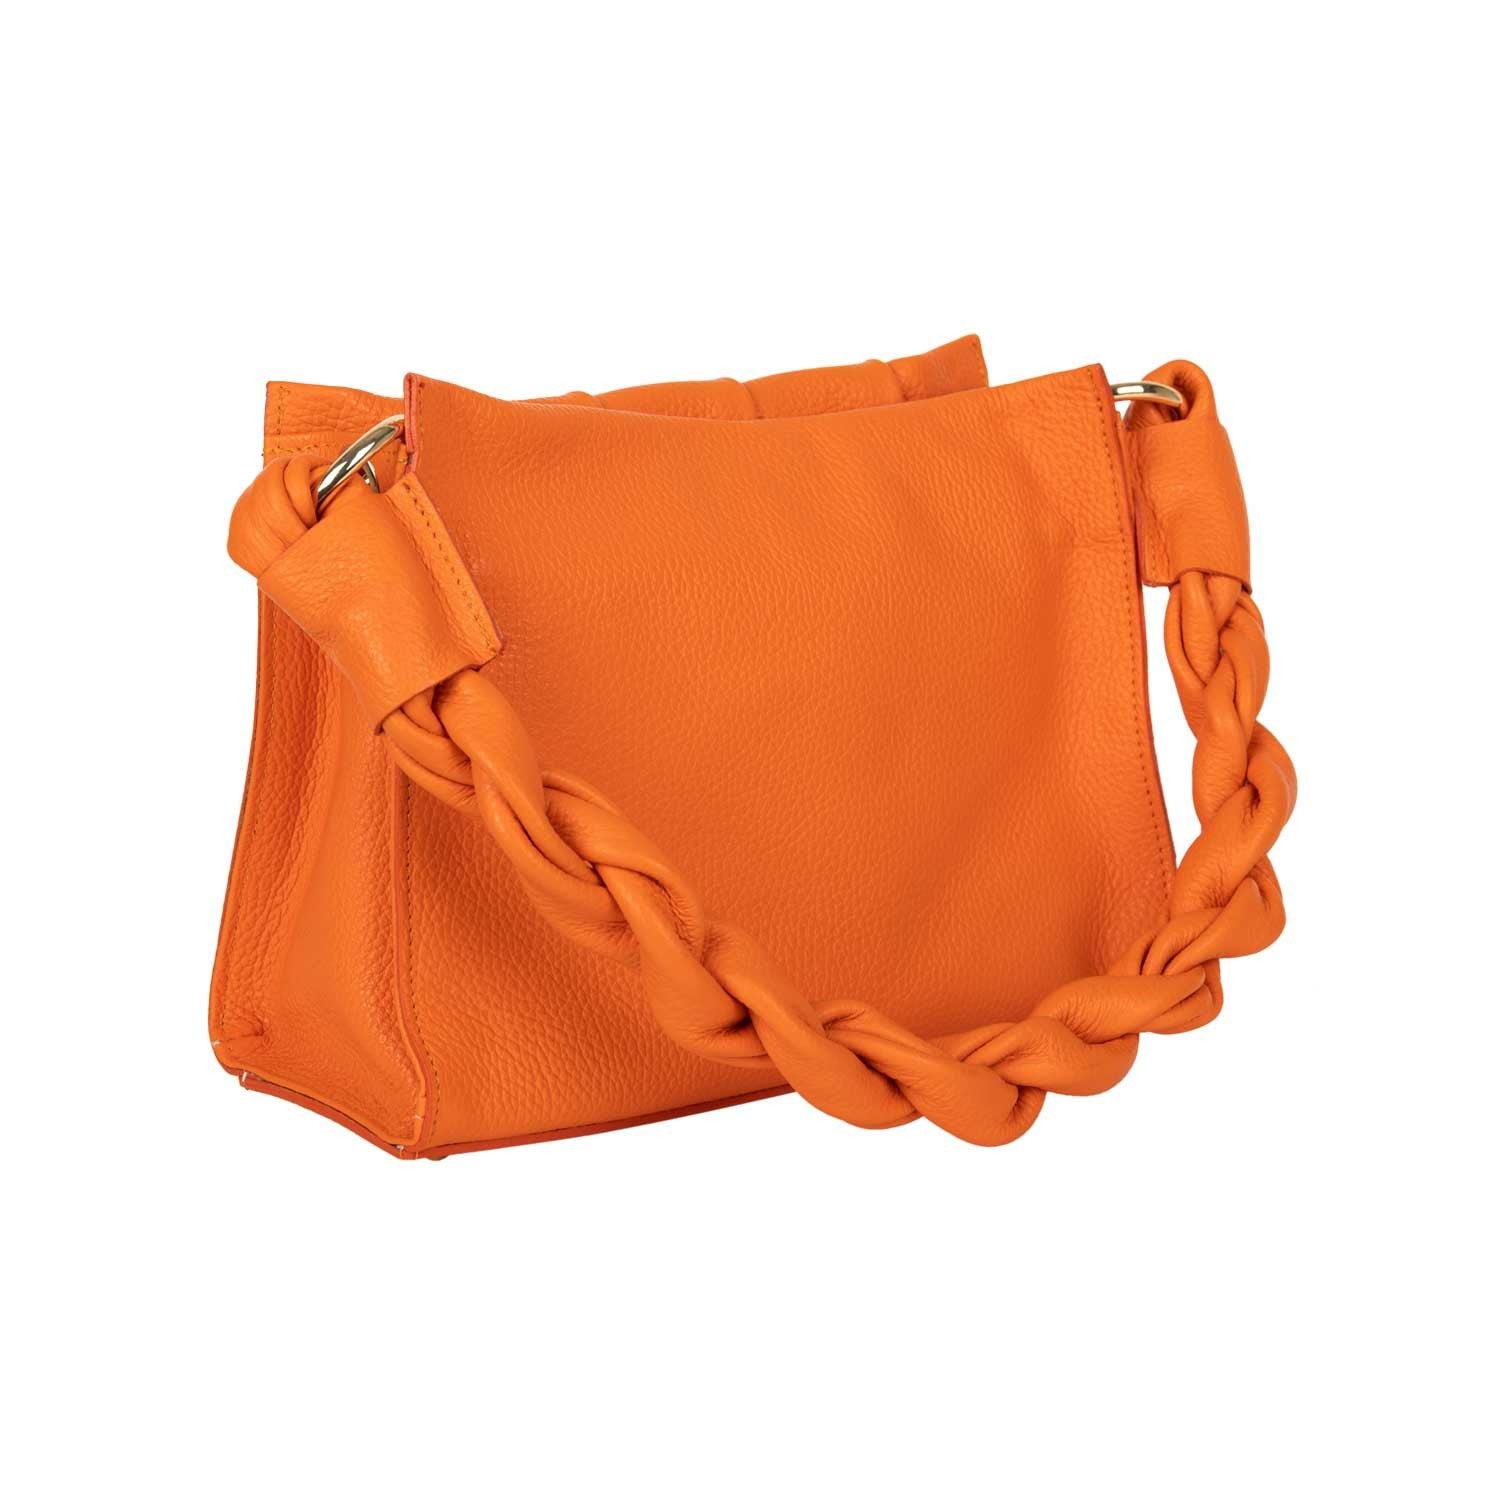 Handtasche Aurela Orange mit Raffungen shirinsehan.com